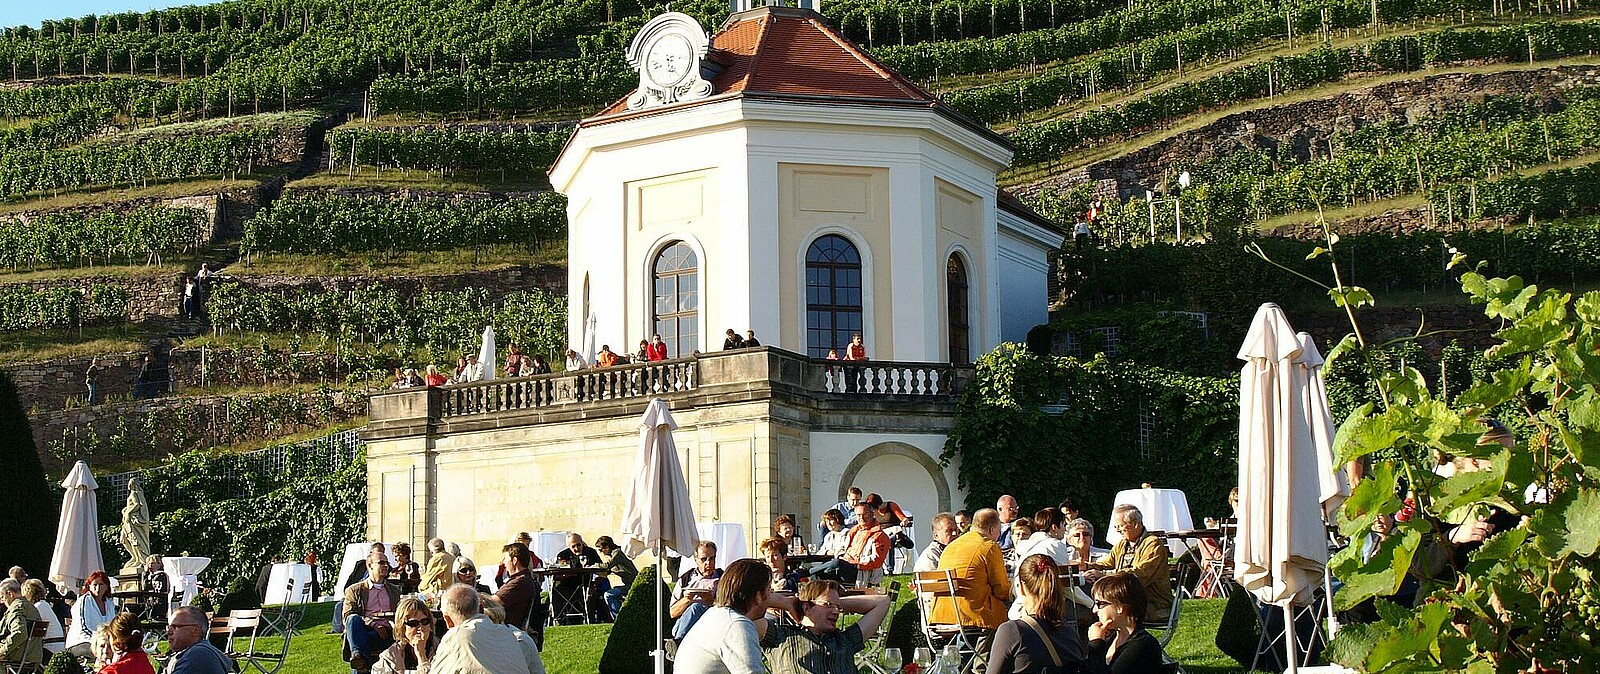 Erlebnisweingut Schloss Wackerbarth gehört zu den Aushängeschildern der Sächsischen Weinstraße. Flanieren Sie durch Parkanlagen, erkunden Weinberge & erfahren in der Manufaktur Interessantes zum Weinbau & -herstellung, bevor Sie gute Tropfen verkosten